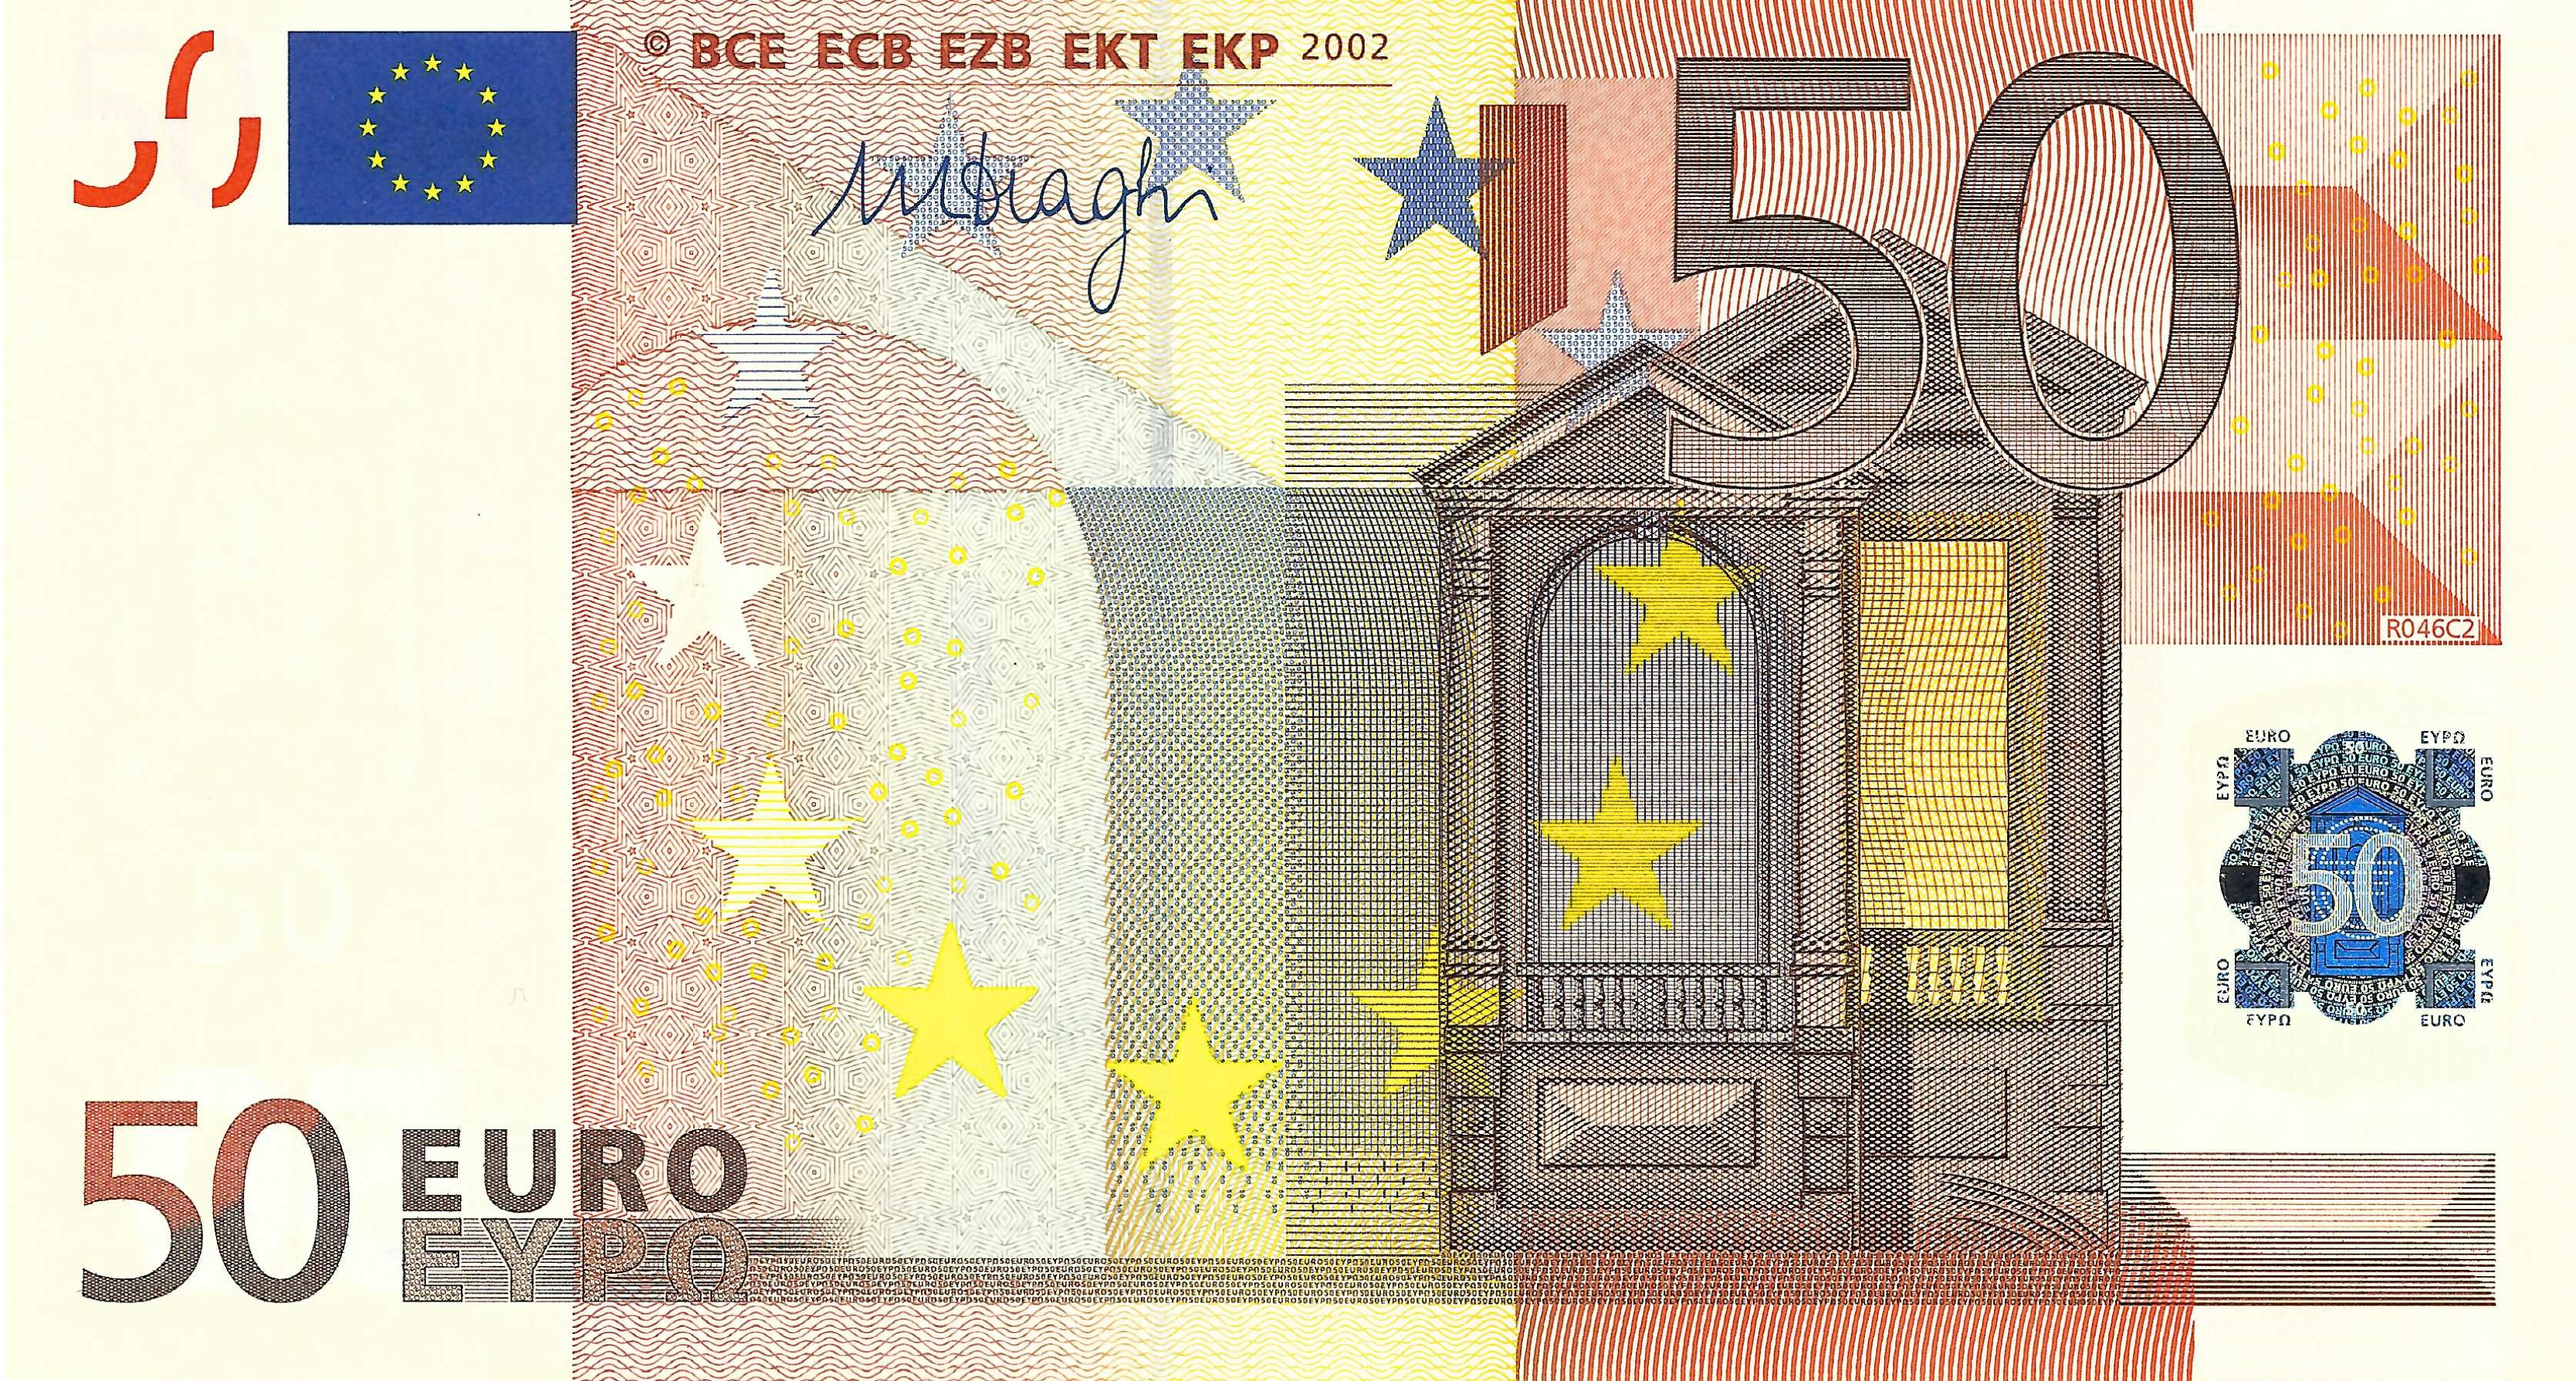 50 Euro biljet 2002 met handtekening M. Draghi